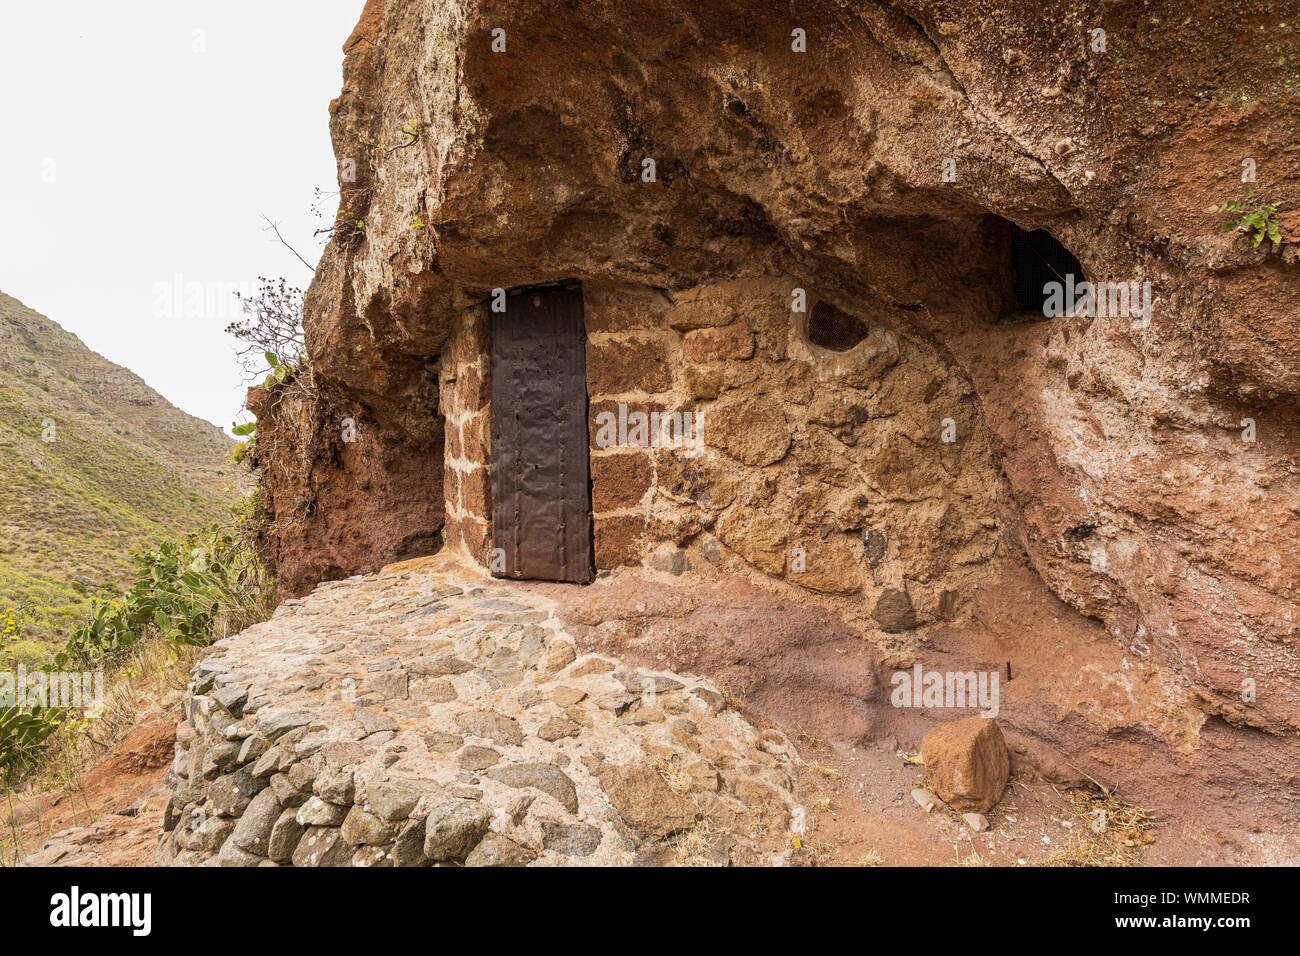 Ancien habitat troglodytique avec porte en métal rouillé, salle de stockage dans la région de barranco seco, Anaga, Tenerife, Canaries, Espagne Banque D'Images